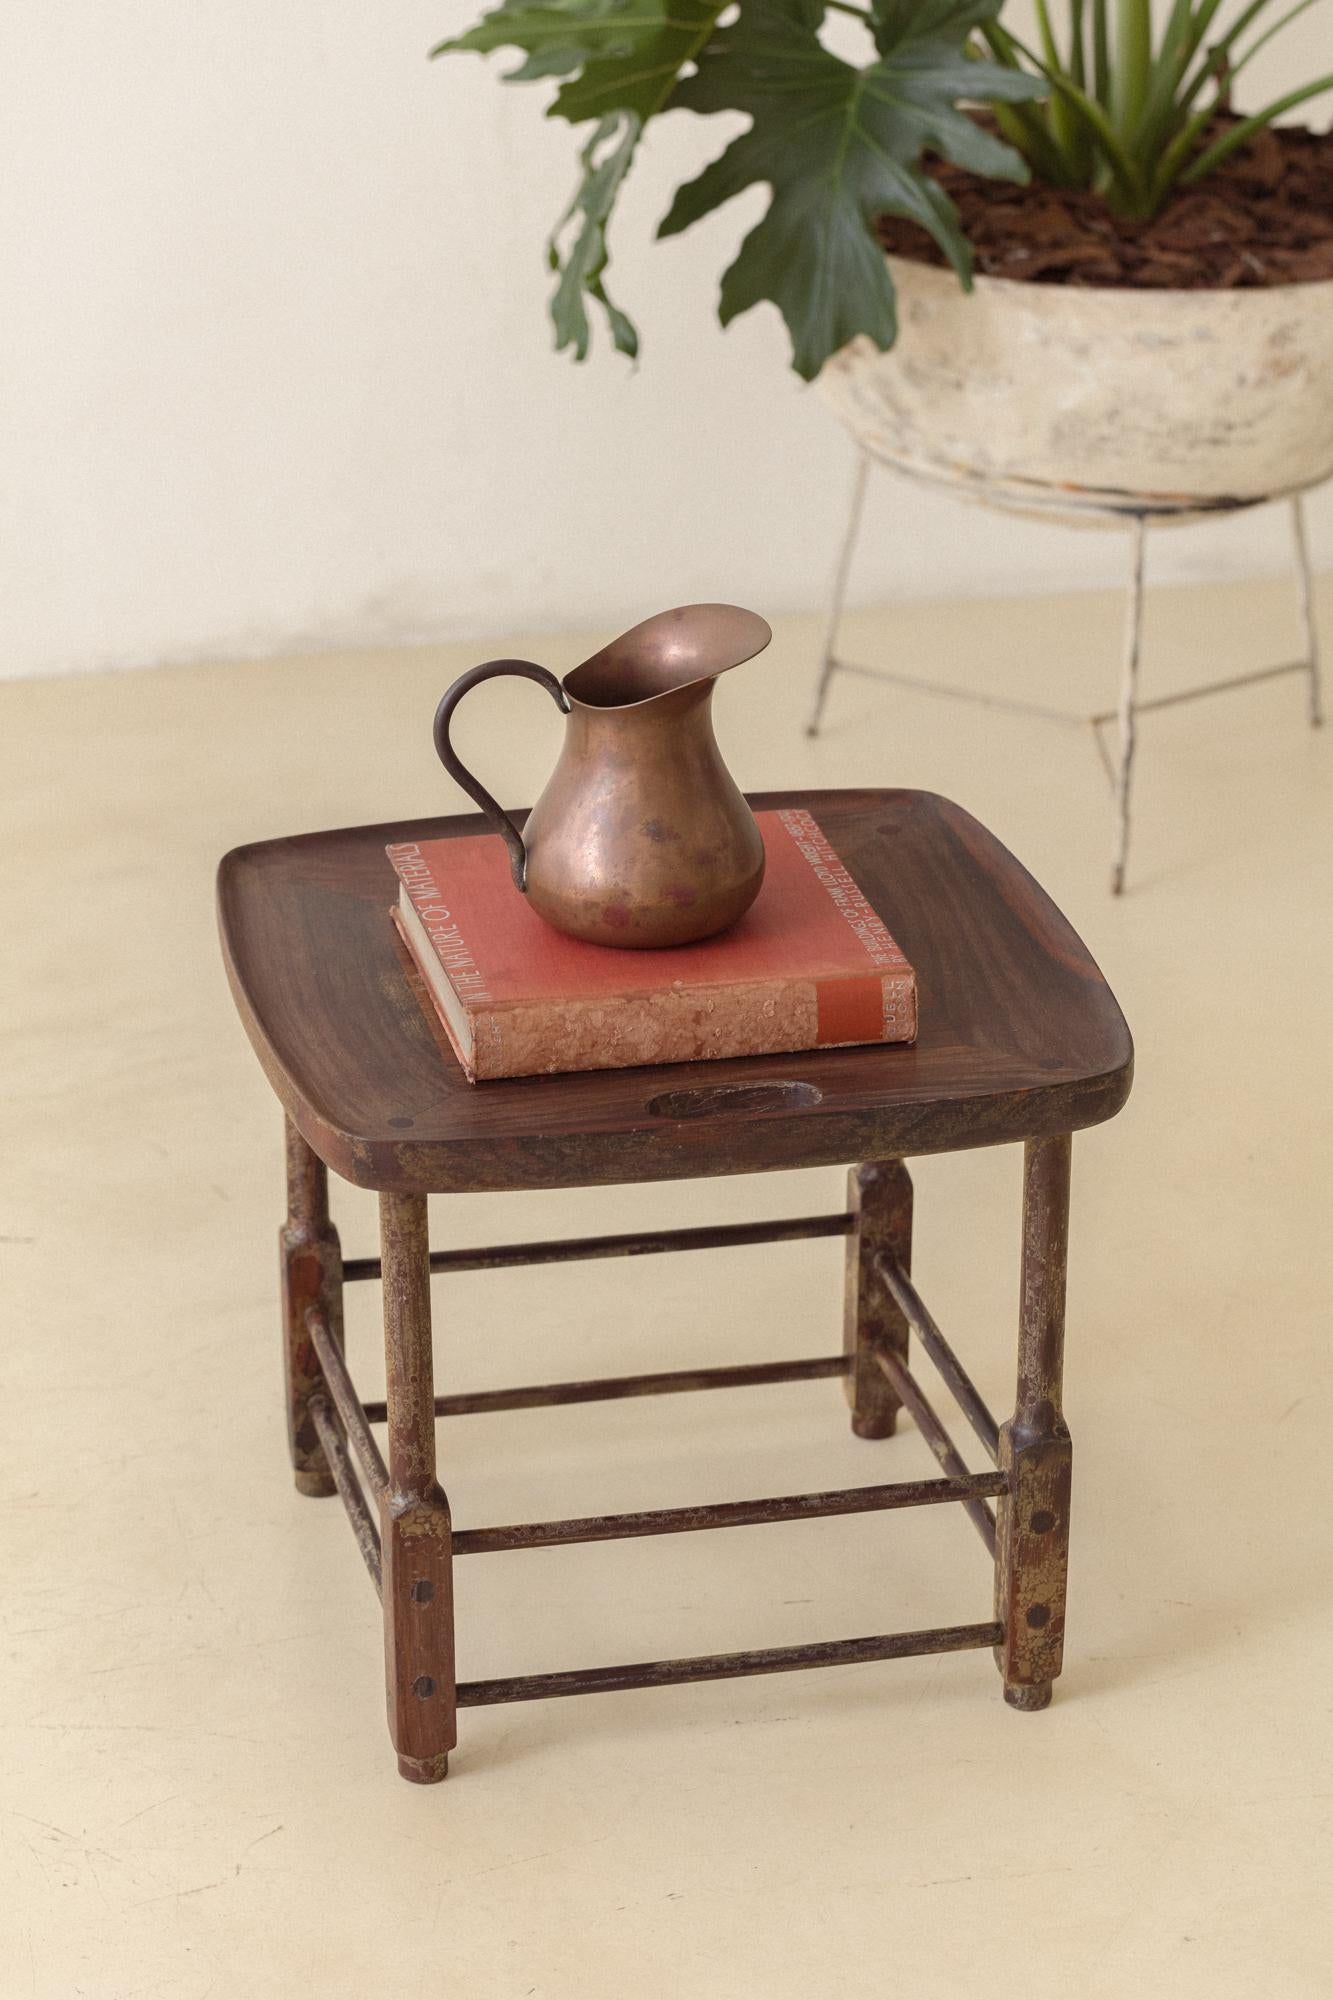 Le tabouret Magrini a été conçu en 1963 par Sergio Rodrigues et produit par son entreprise, Oca.

Ces pièces sont composées d'une structure solide en bois de rose avec des pieds tournés et peuvent être utilisées comme sièges et supports. Le